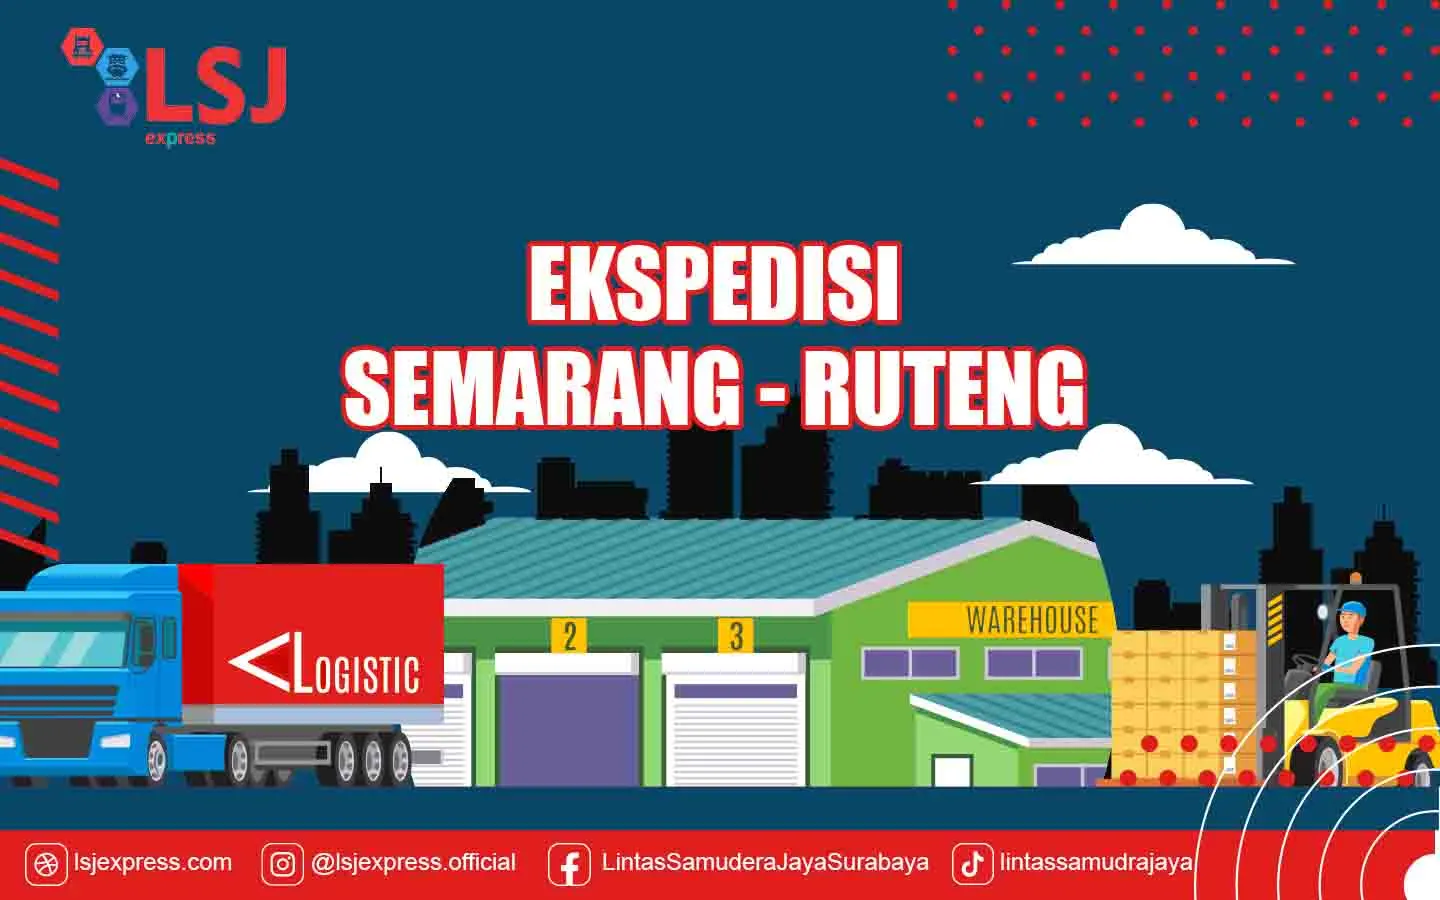 Ekspedisi Semarang Ruteng